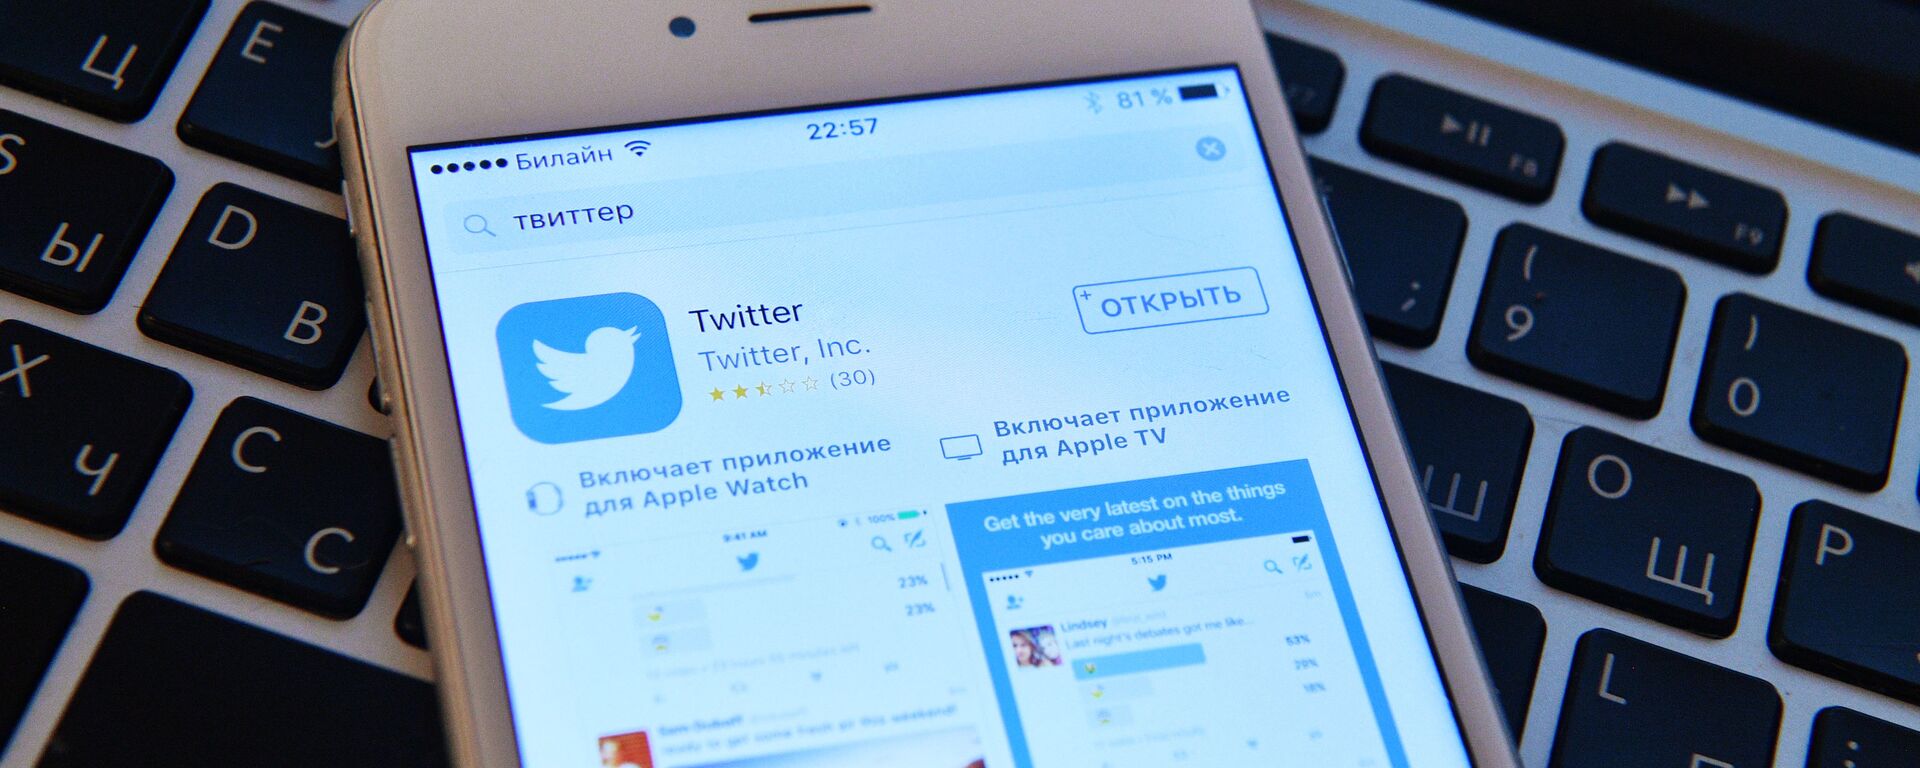 Страница социальной сети Twitter на экране смартфона, архивное фото - Sputnik Lietuva, 1920, 10.03.2021